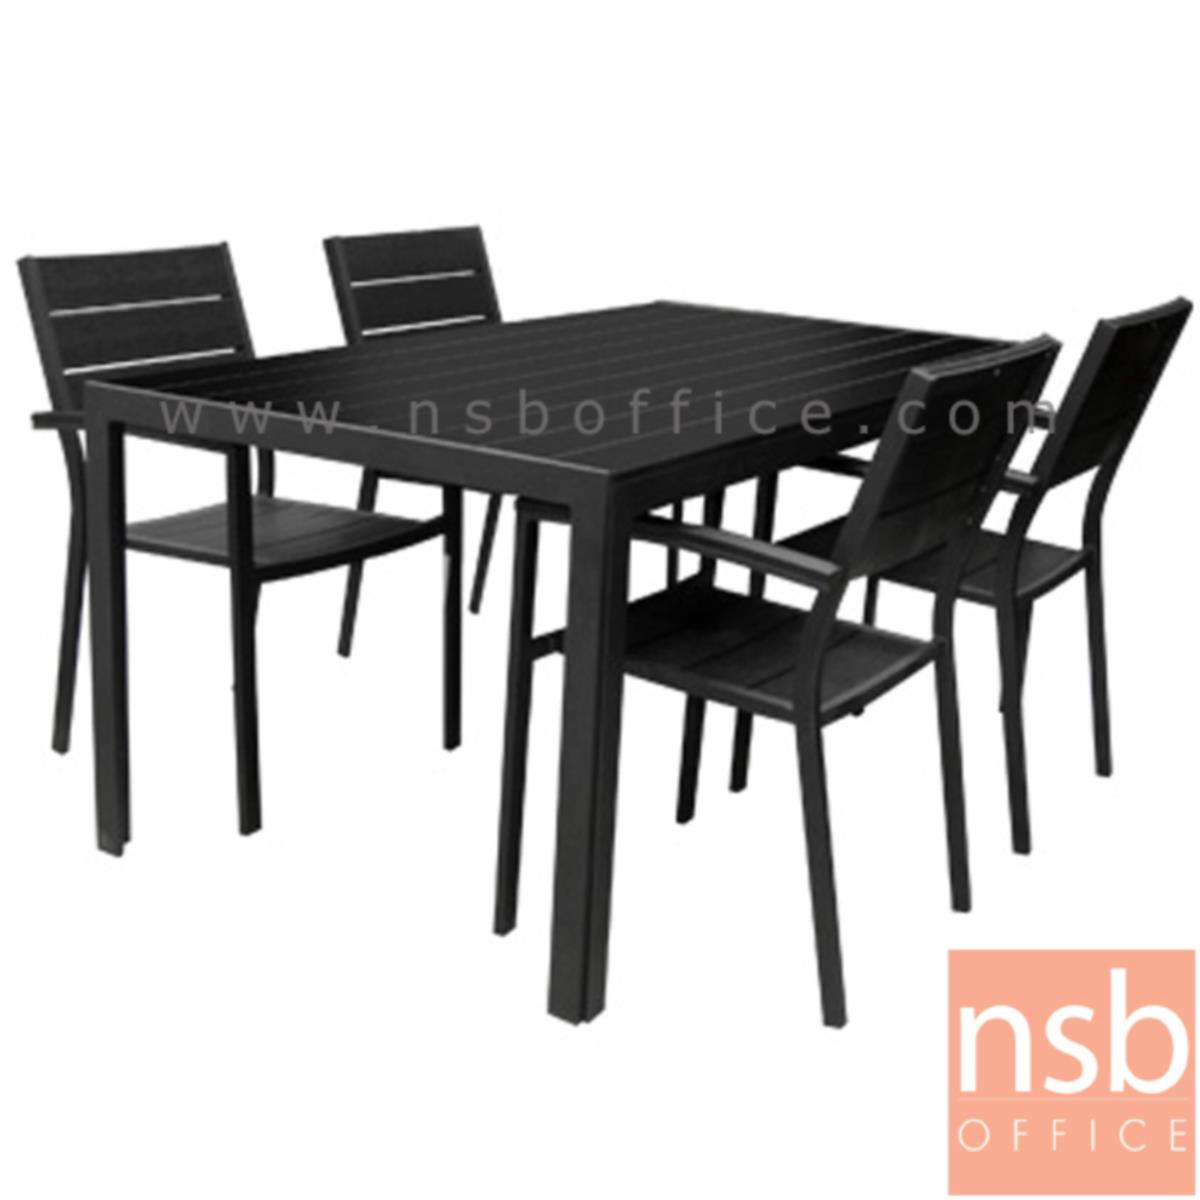 G11A169:ชุดโต๊ะและเก้าอี้ 4 ที่นั่งสนาม รุ่น RANO-160CM ผลิตสีดำ   